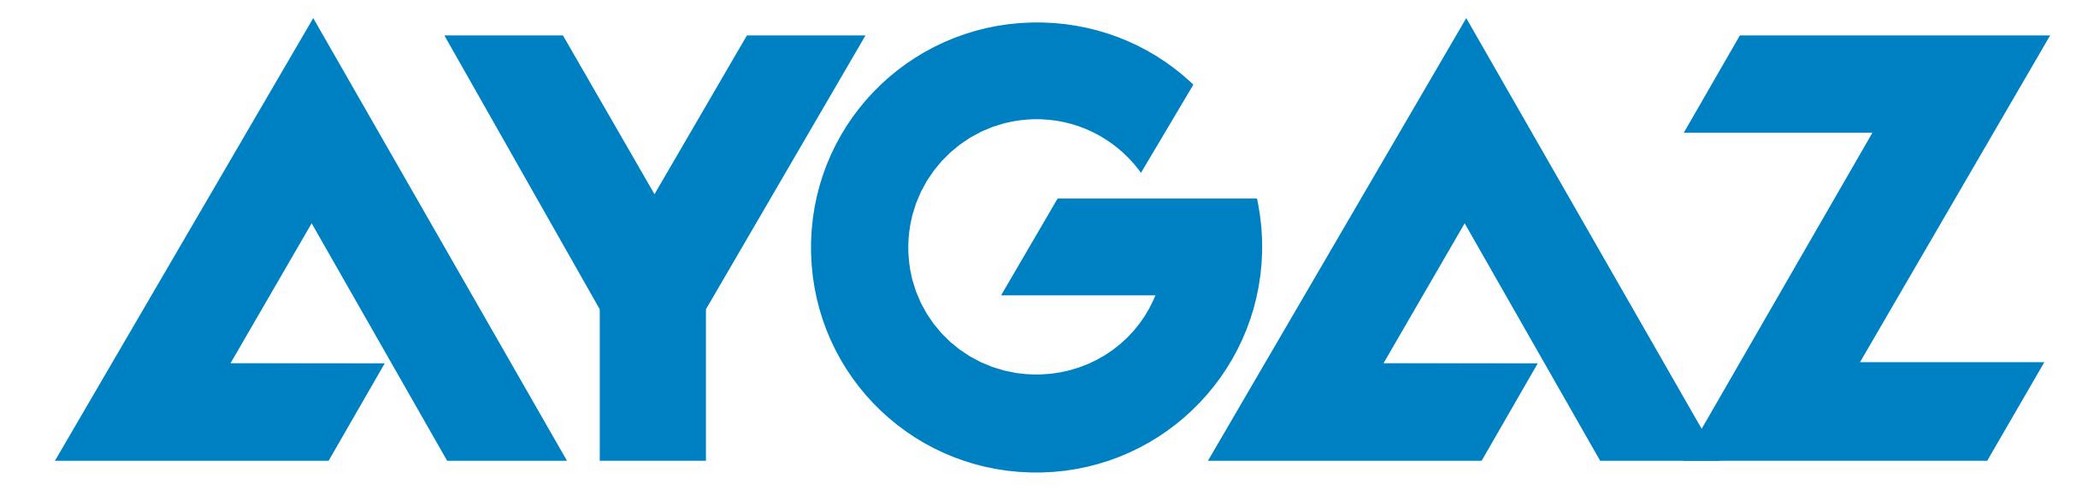 EPS) logo vector